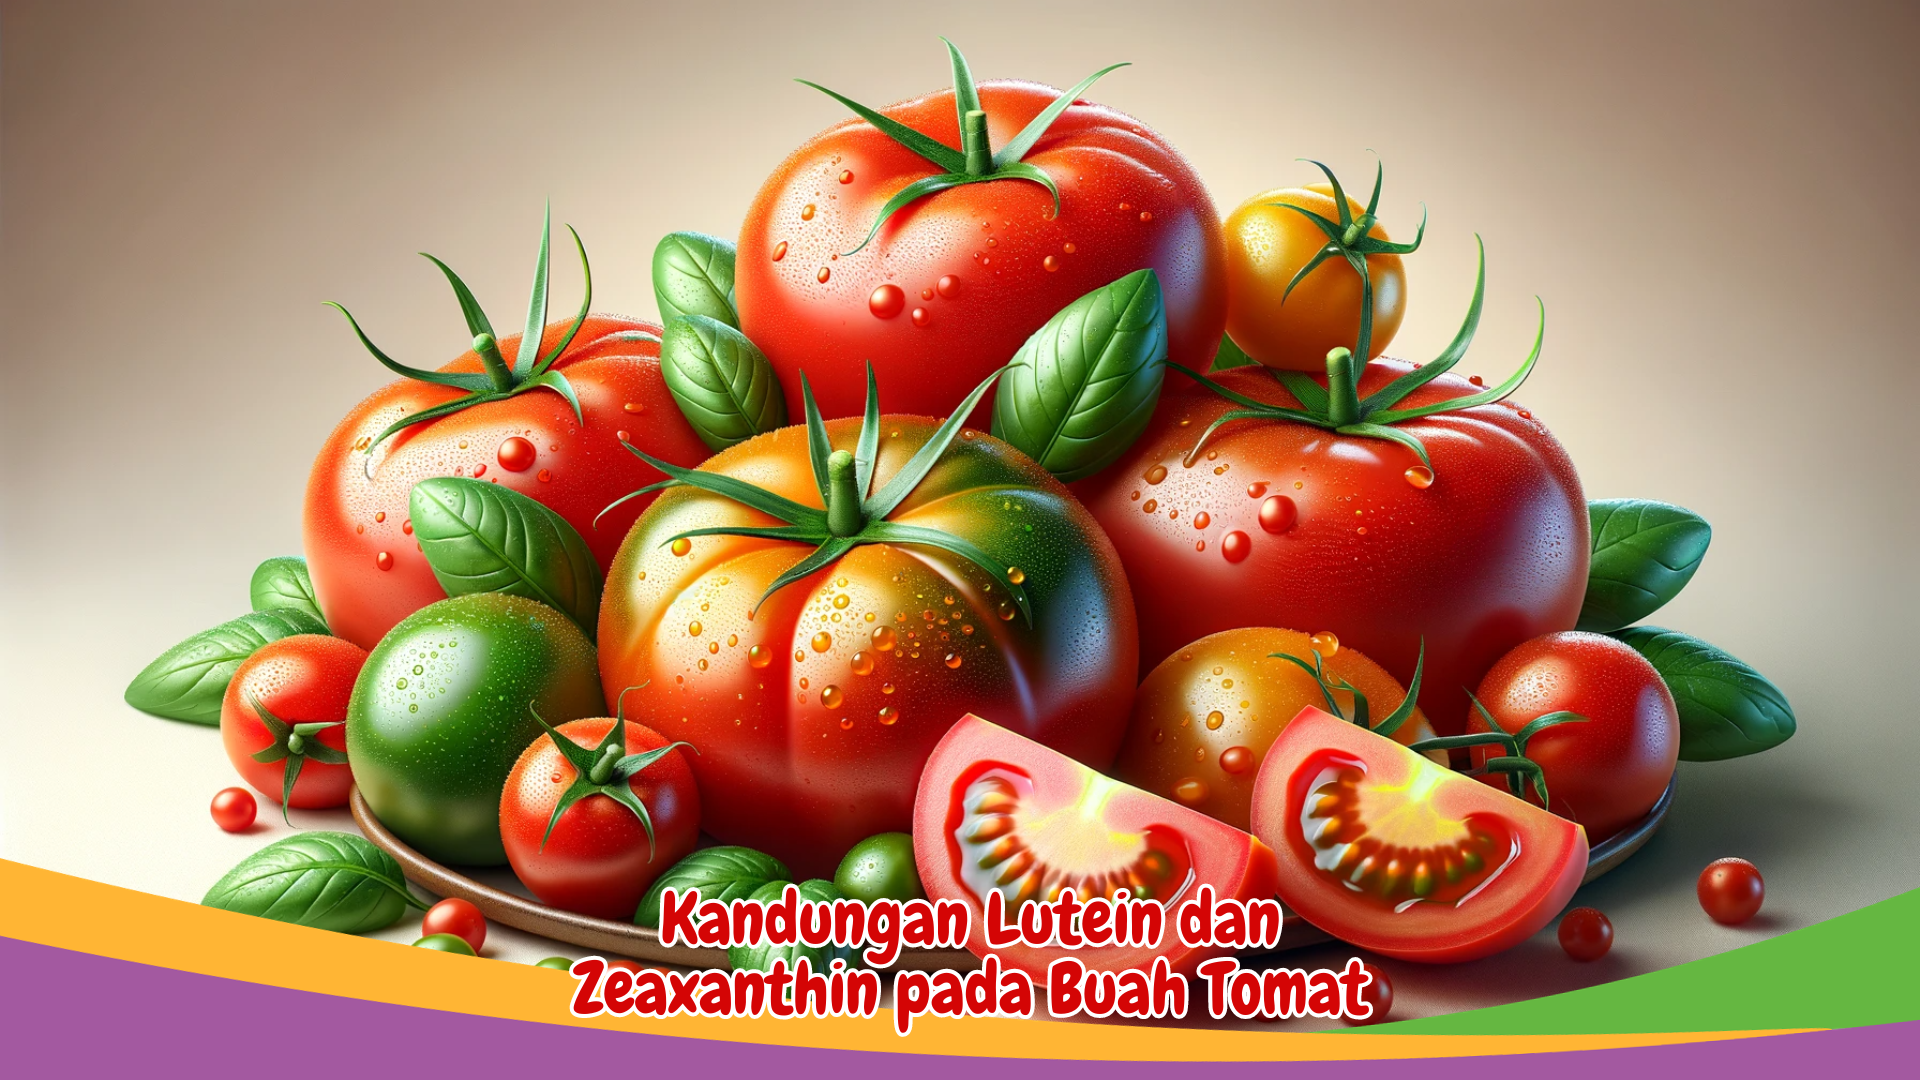 Kandungan Lutein dan Zeaxanthin pada Buah Tomat